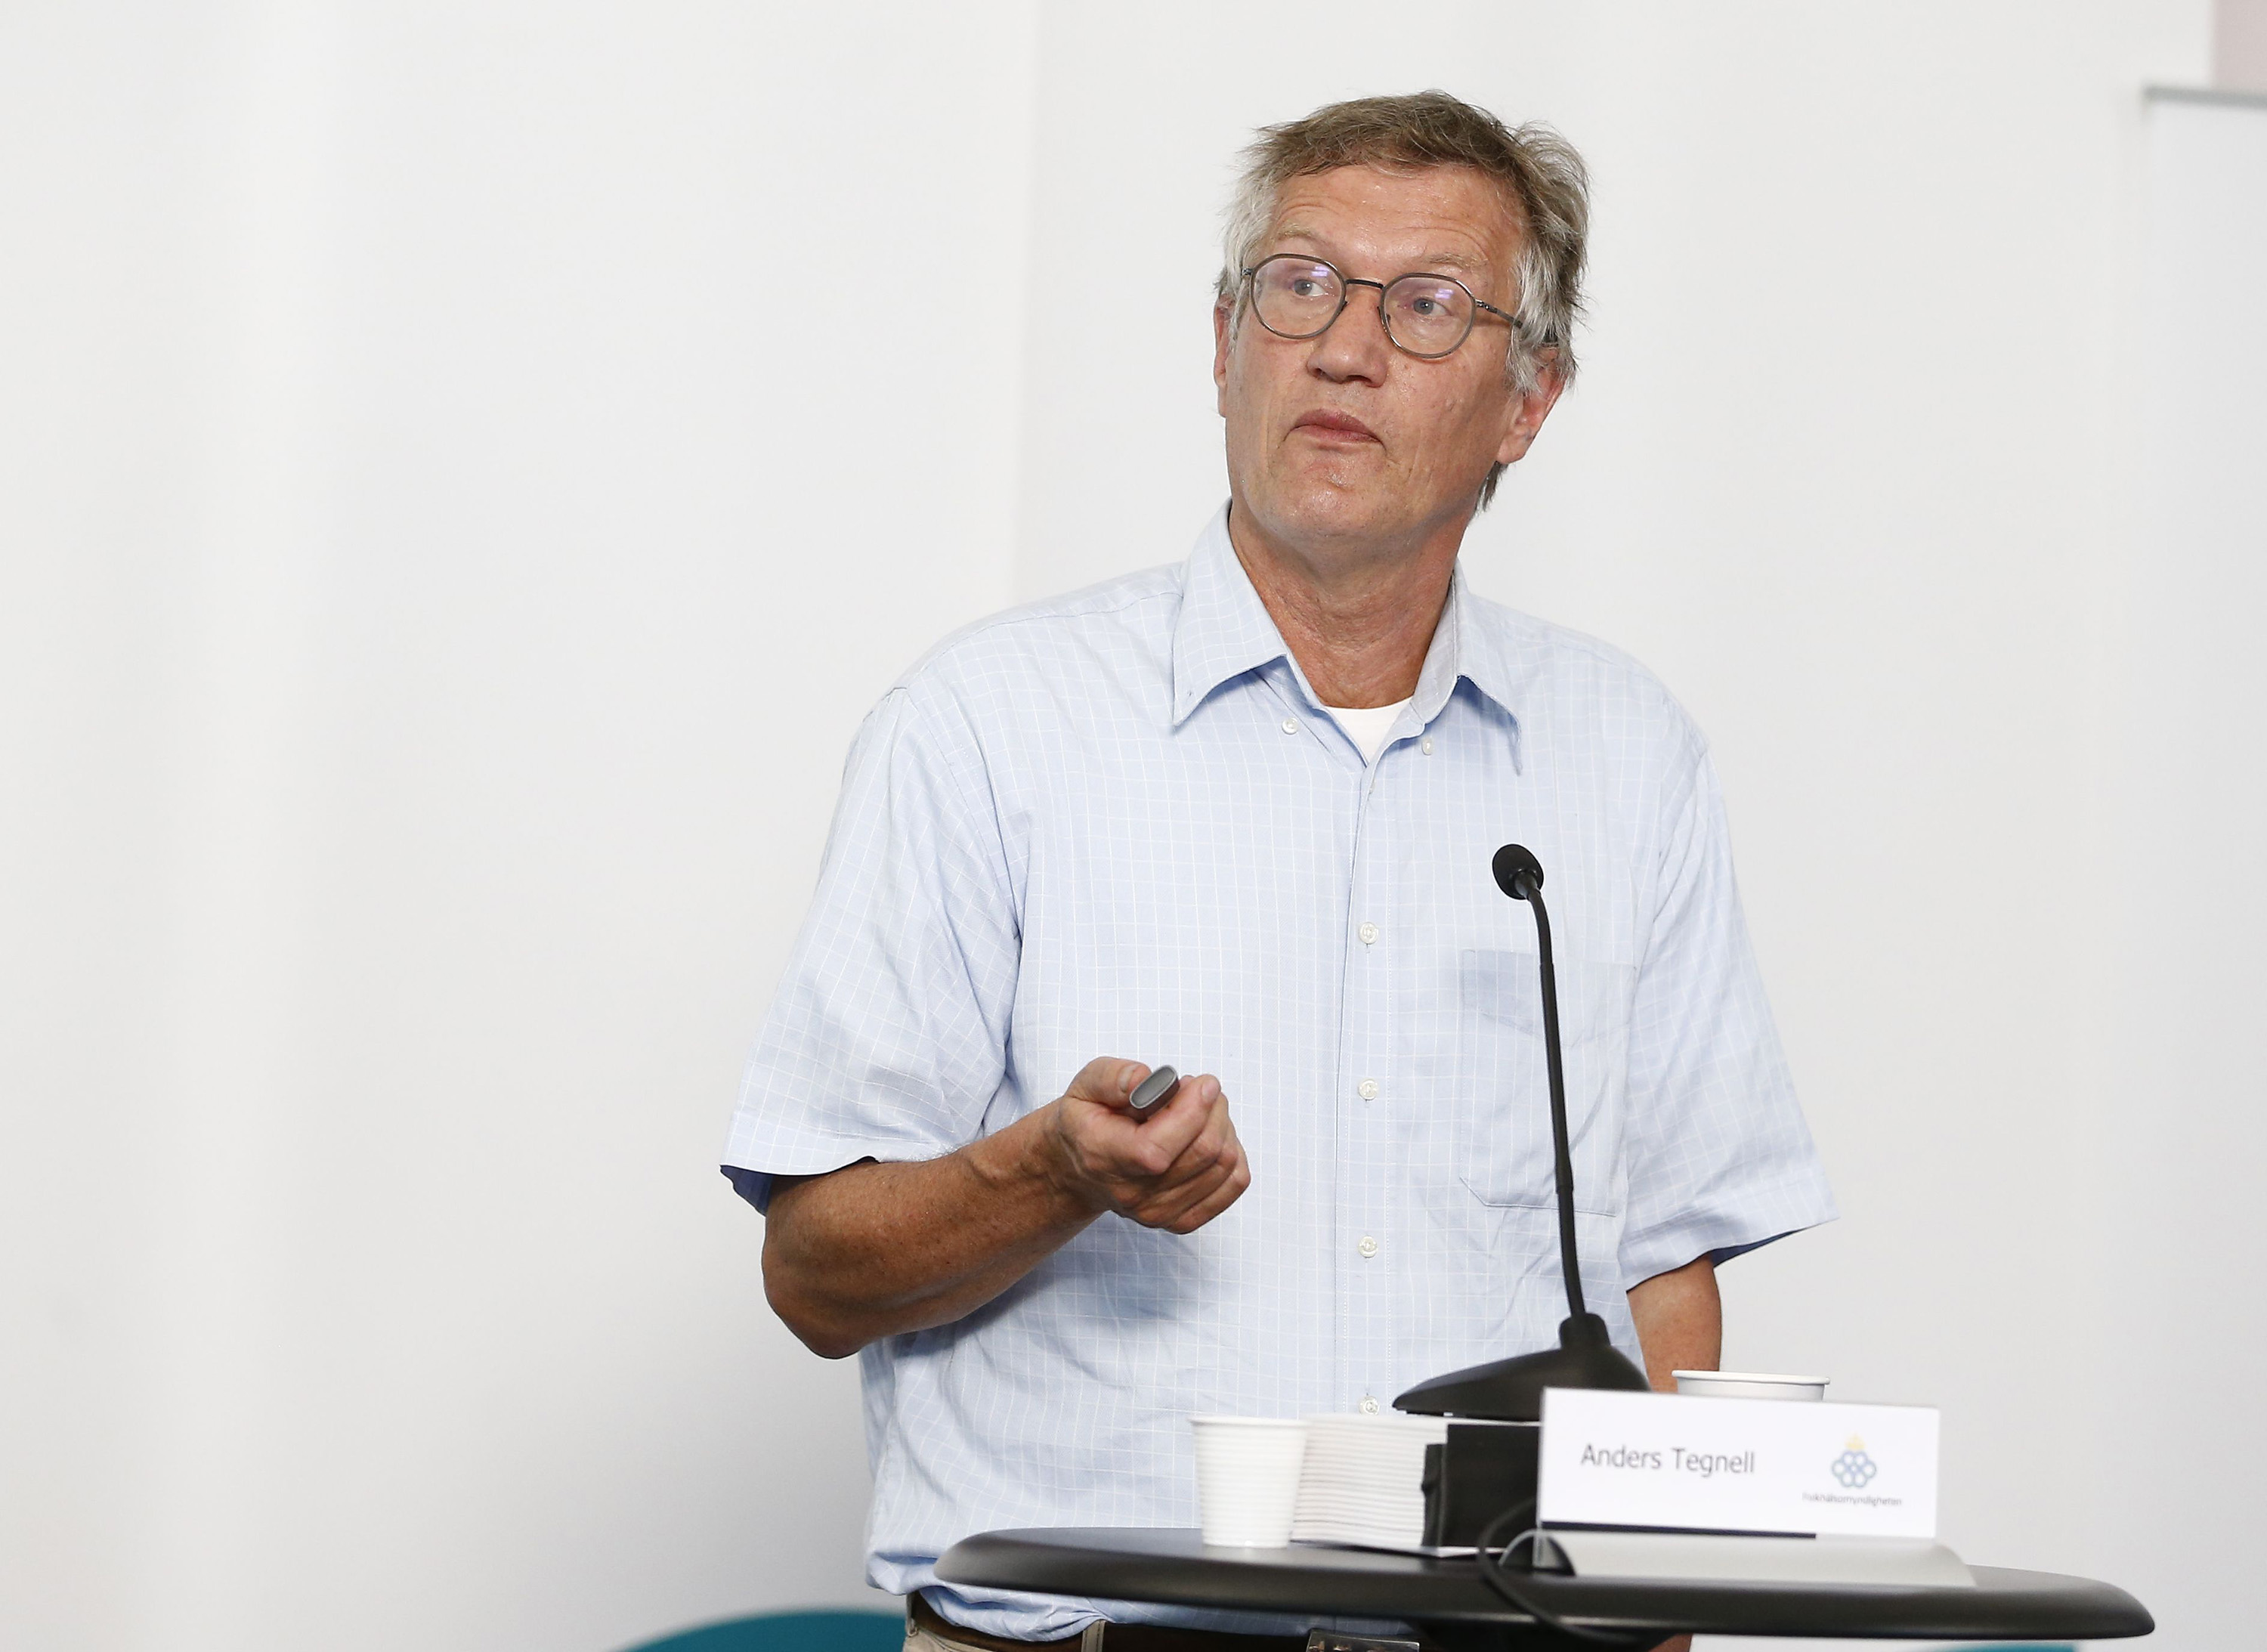 Anders Tegnell speaks in Stockholm, on June 25.